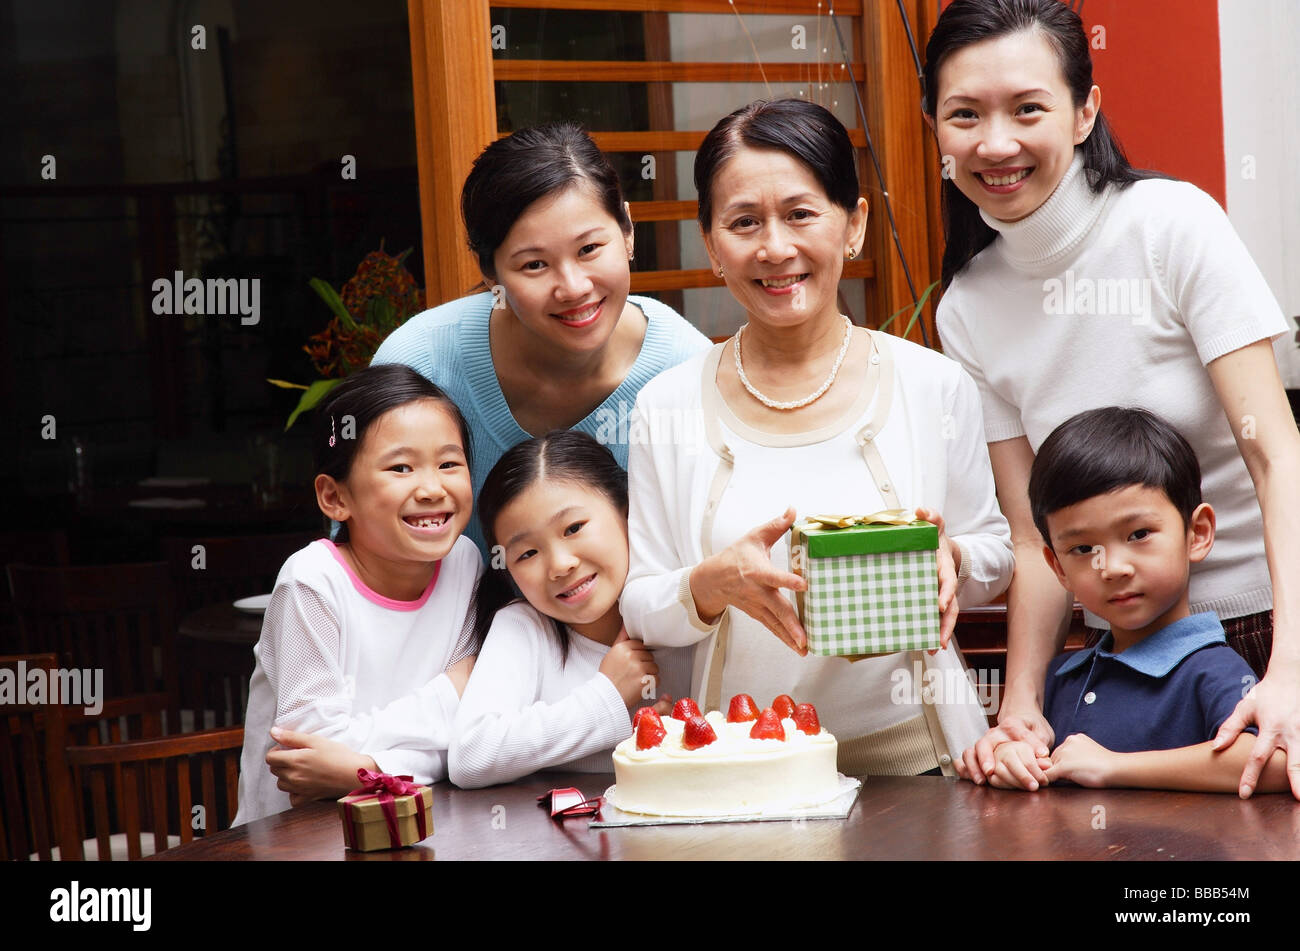 Family celebrating birthday, looking at camera Stock Photo